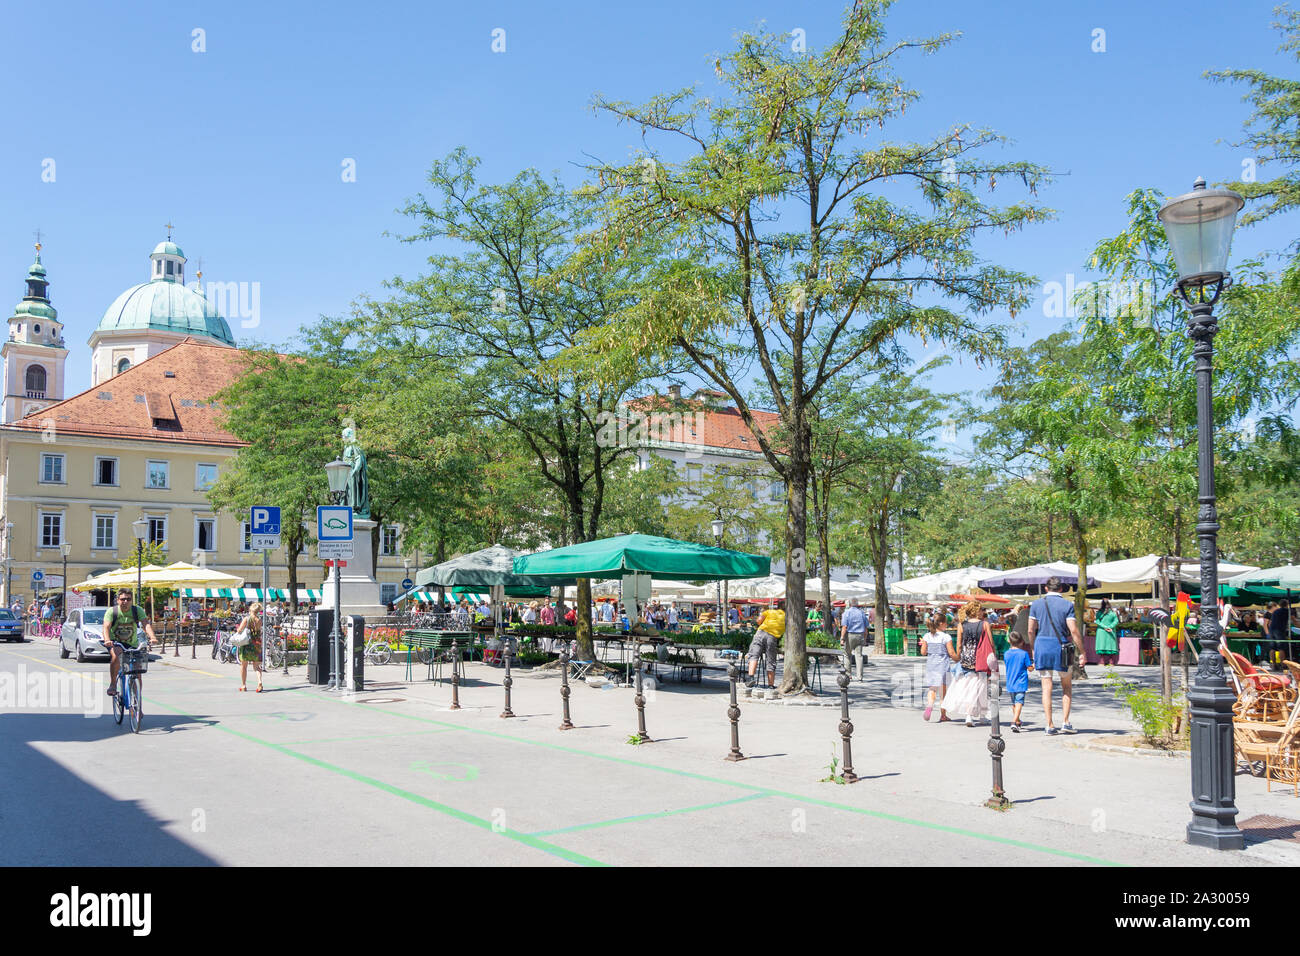 Central Market, Vodnik Square, Old Town, Ljubljana, Slovenia Stock Photo